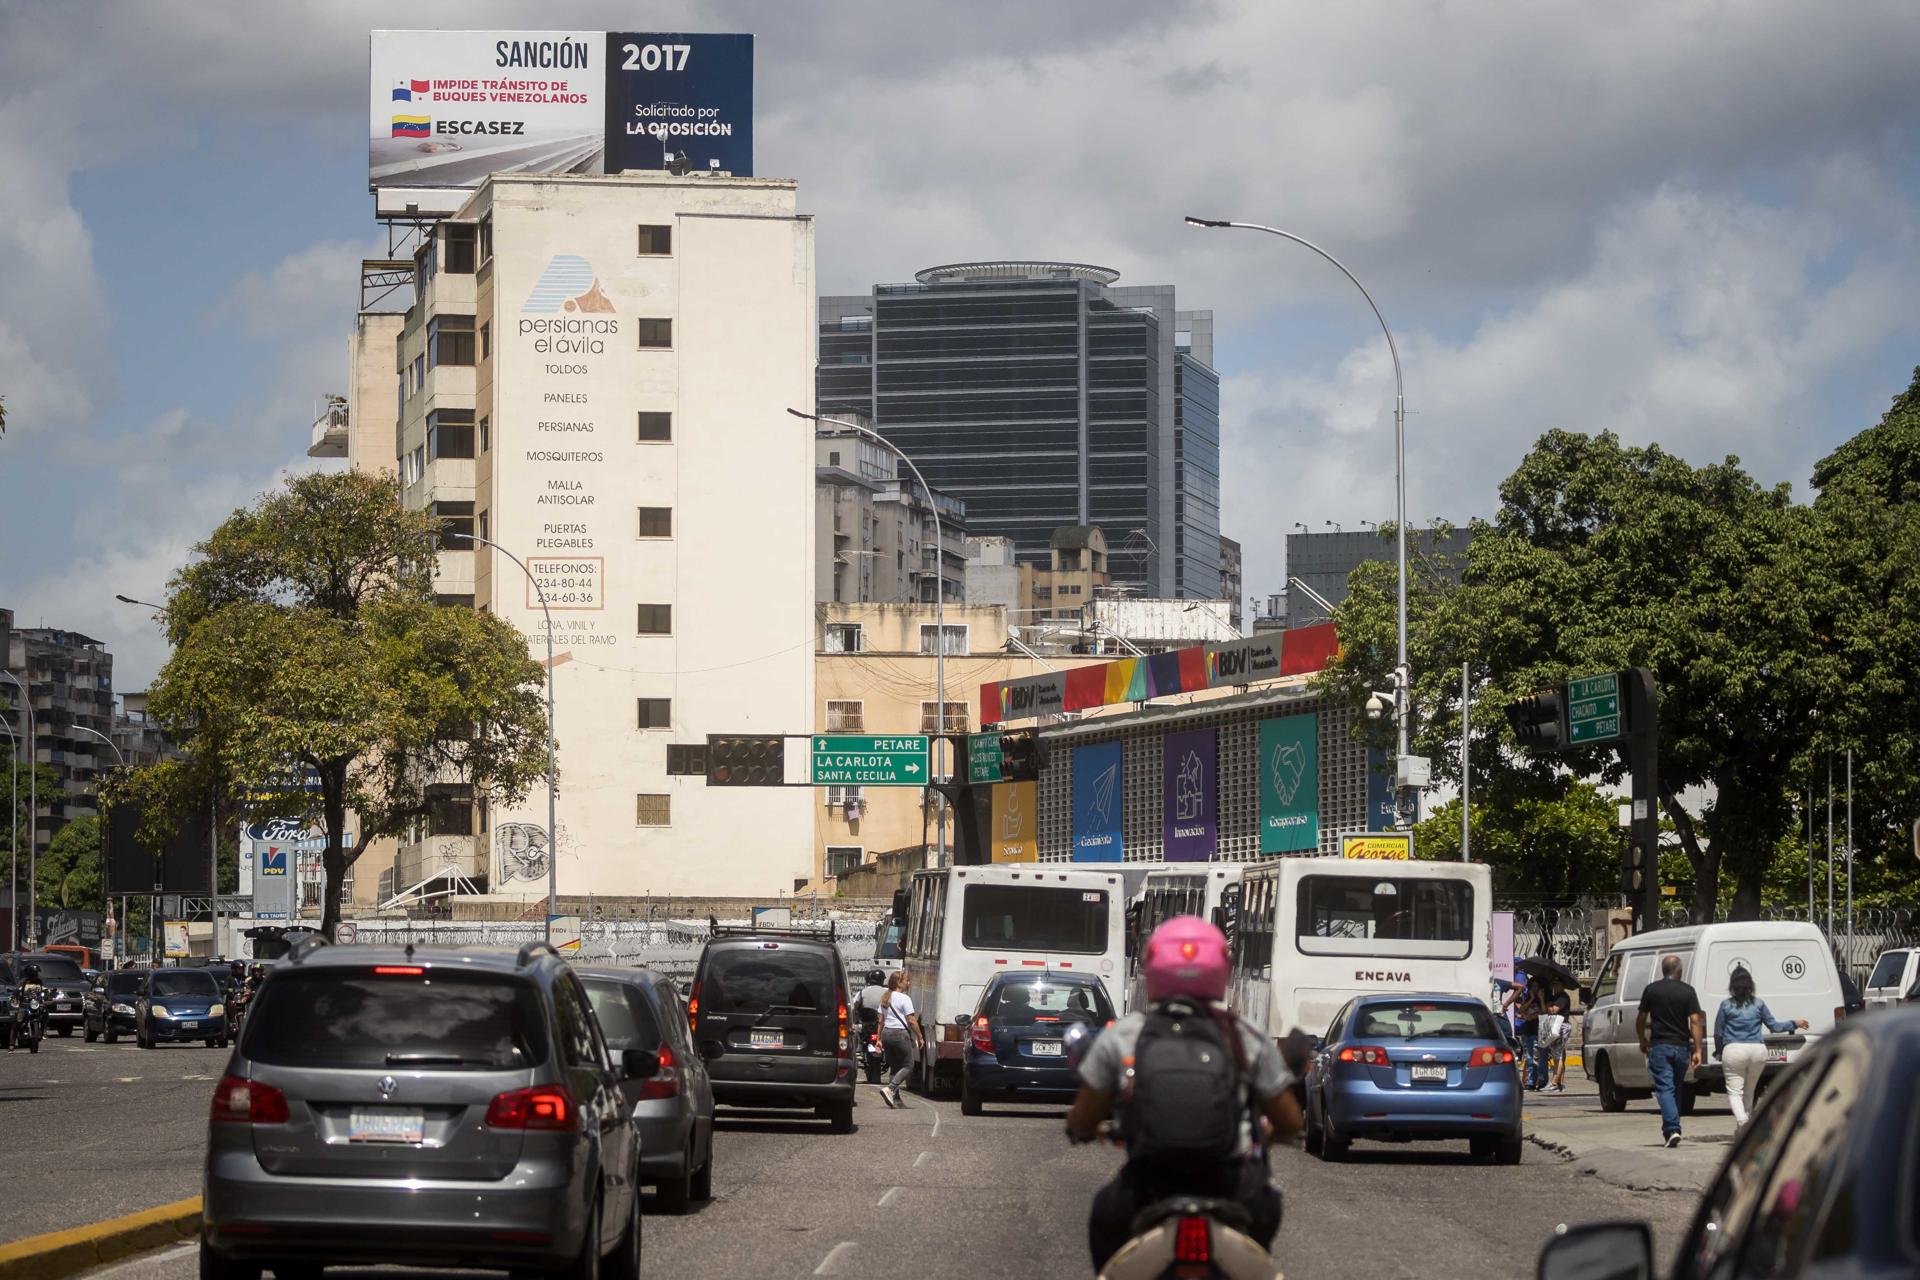 Panamá ha participado en sanciones contra Venezuela, denuncia régimen de Maduro